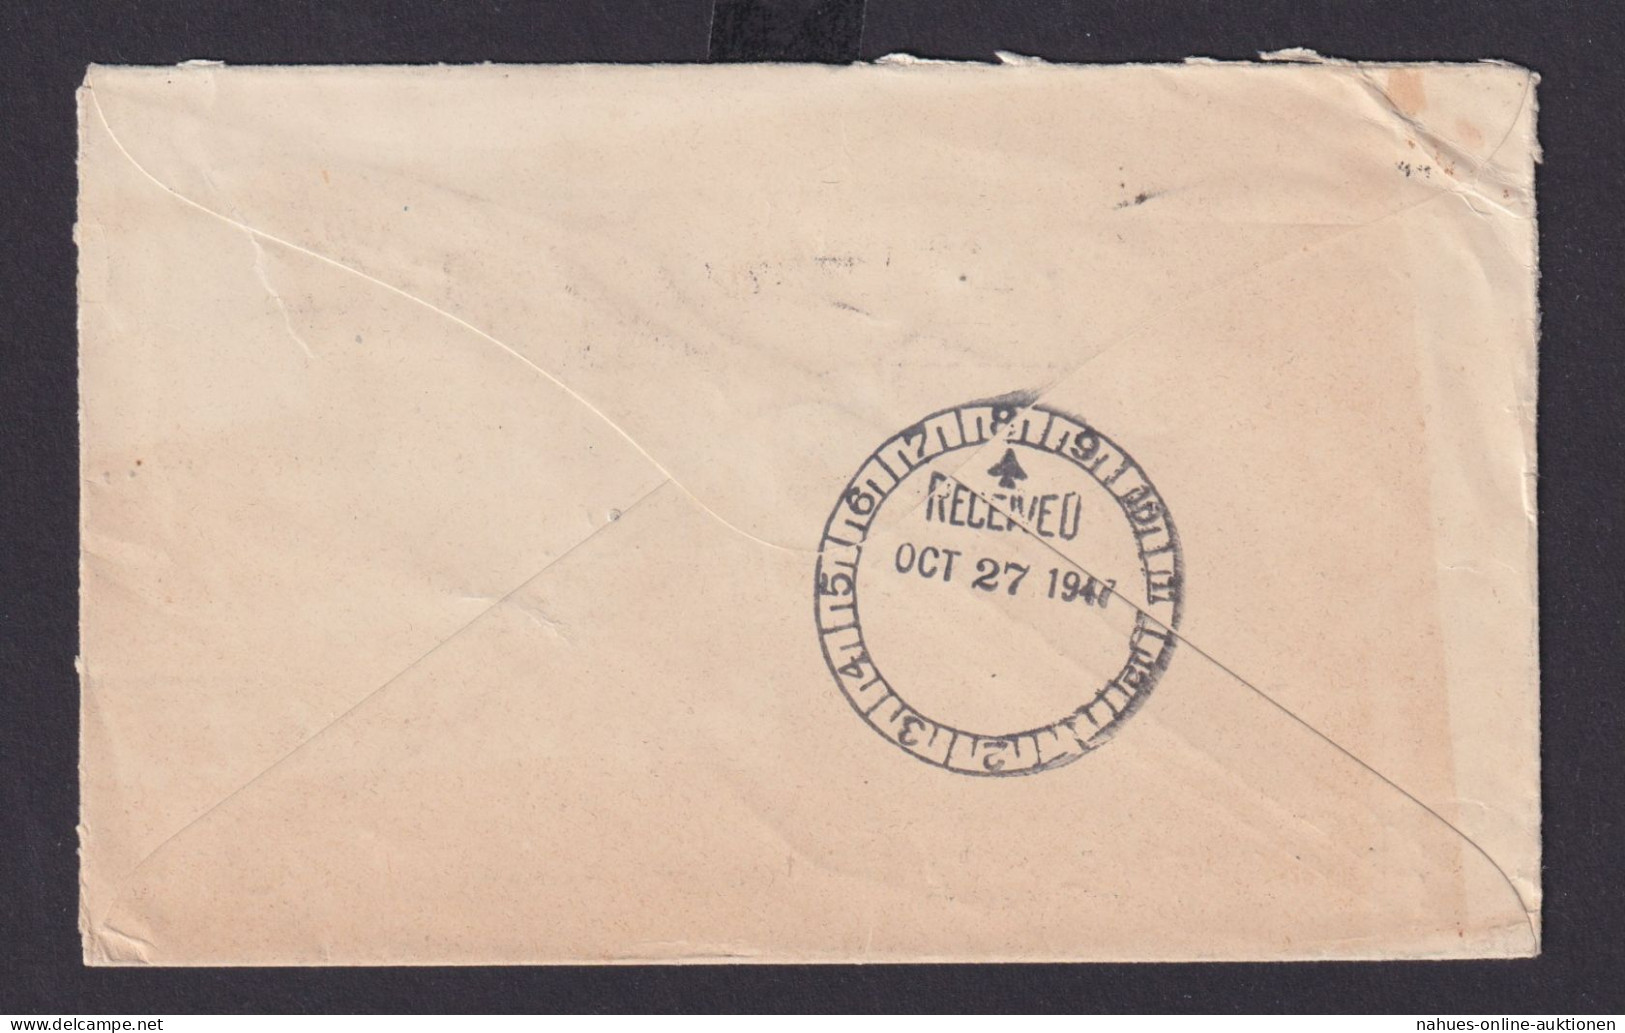 Australien Übersee Brief MIF Masch.St. Sydney Nach Brooklyn New York USA - Sammlungen